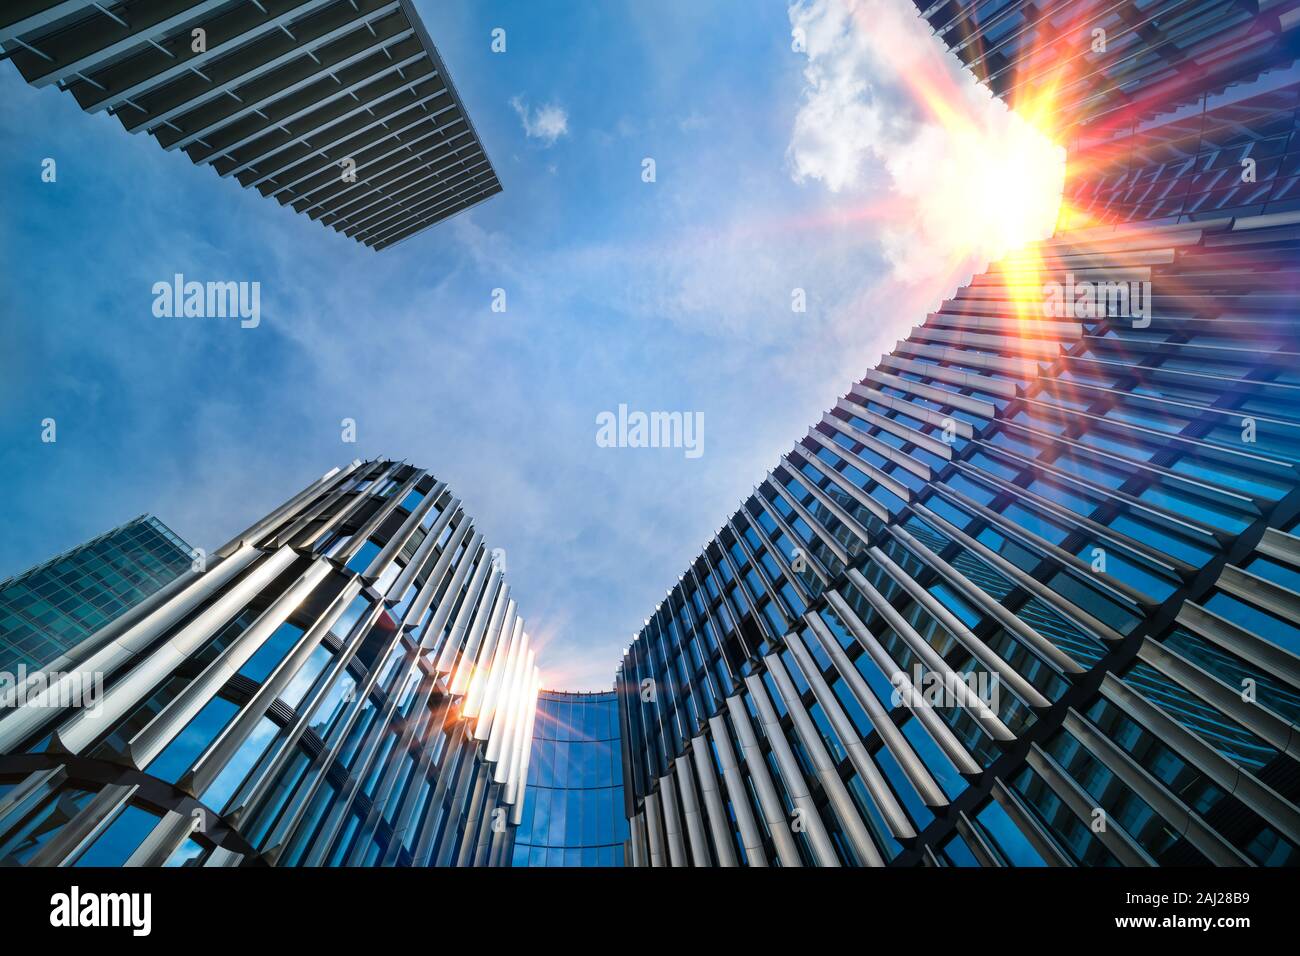 Les bâtiments de grande hauteur moderne vue du bas. Soleil sur ciel bleu. Partie supérieure de gratte-ciel dans le centre ville. La mise en miroir des rayons de soleil sur façade. Détail Metropolis. Banque D'Images